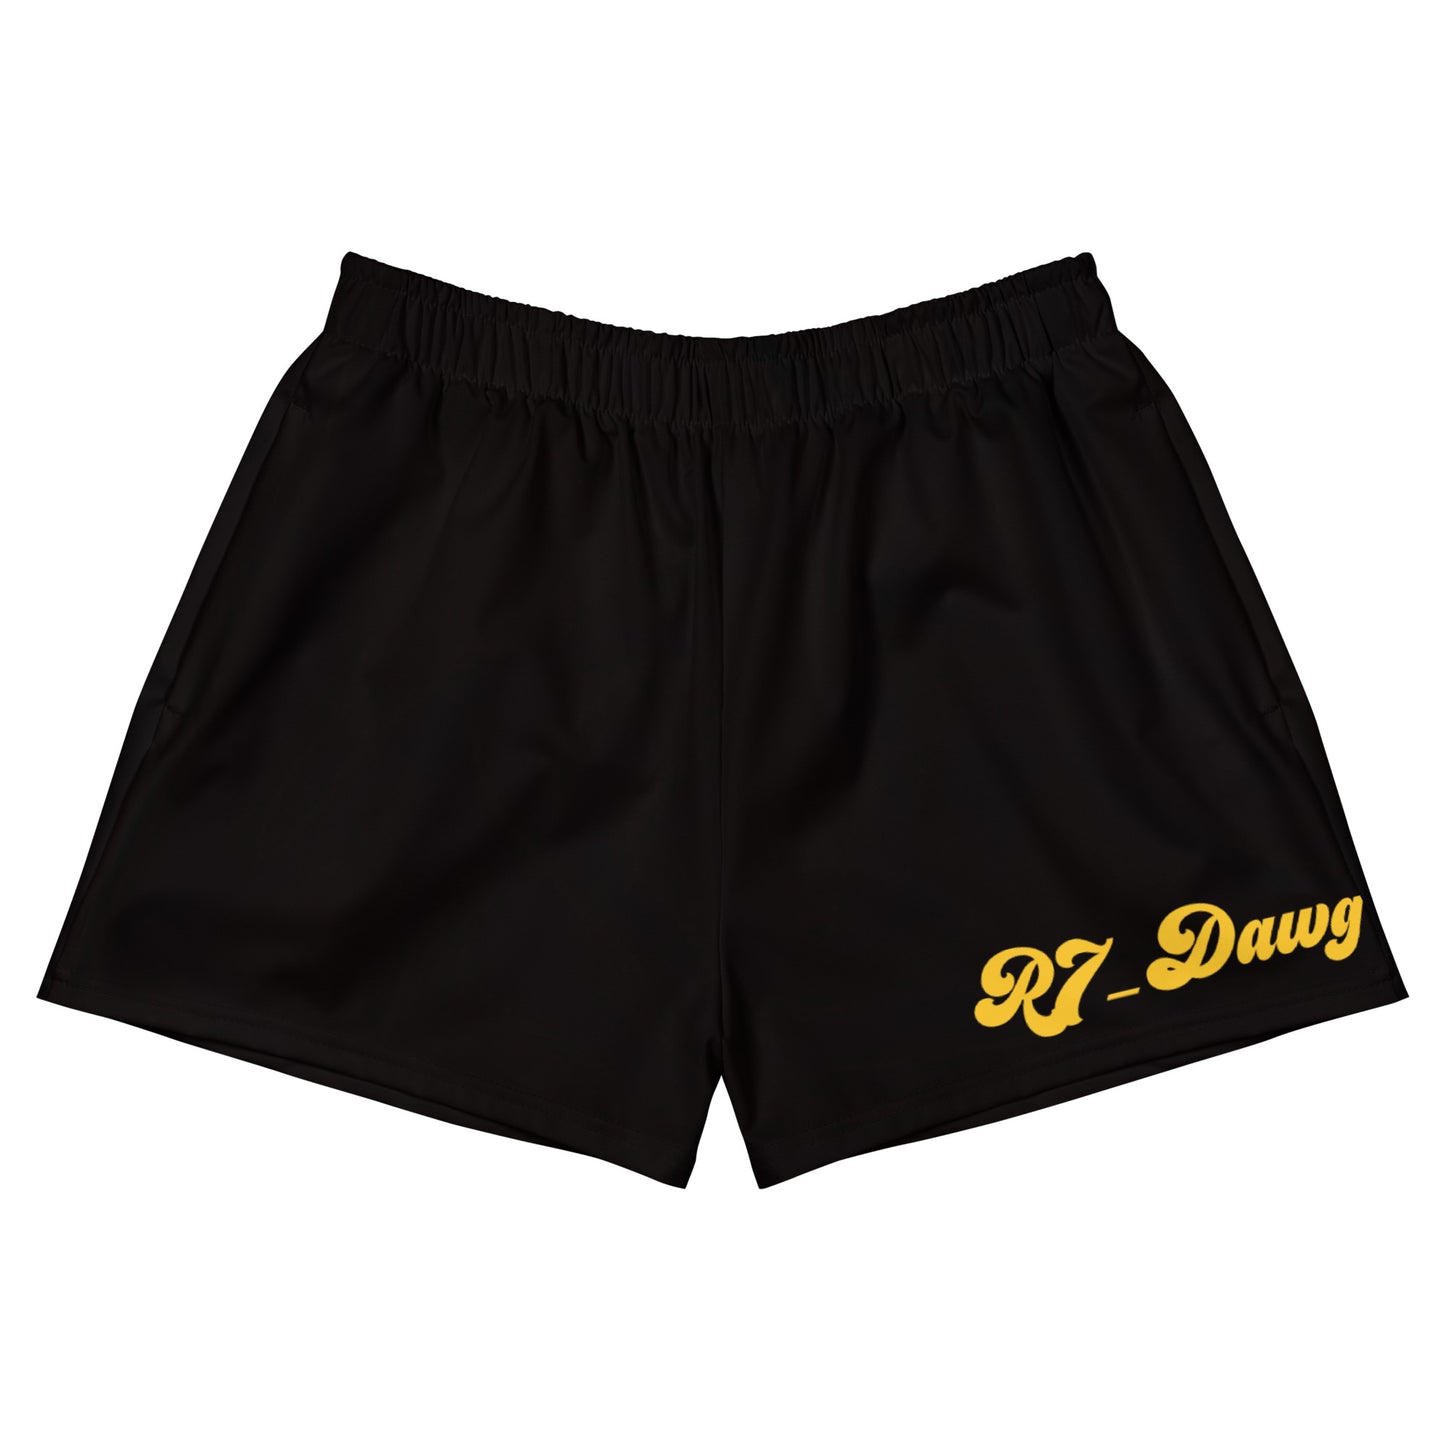 Black R7_Dawg - Women's Athletic Shorts